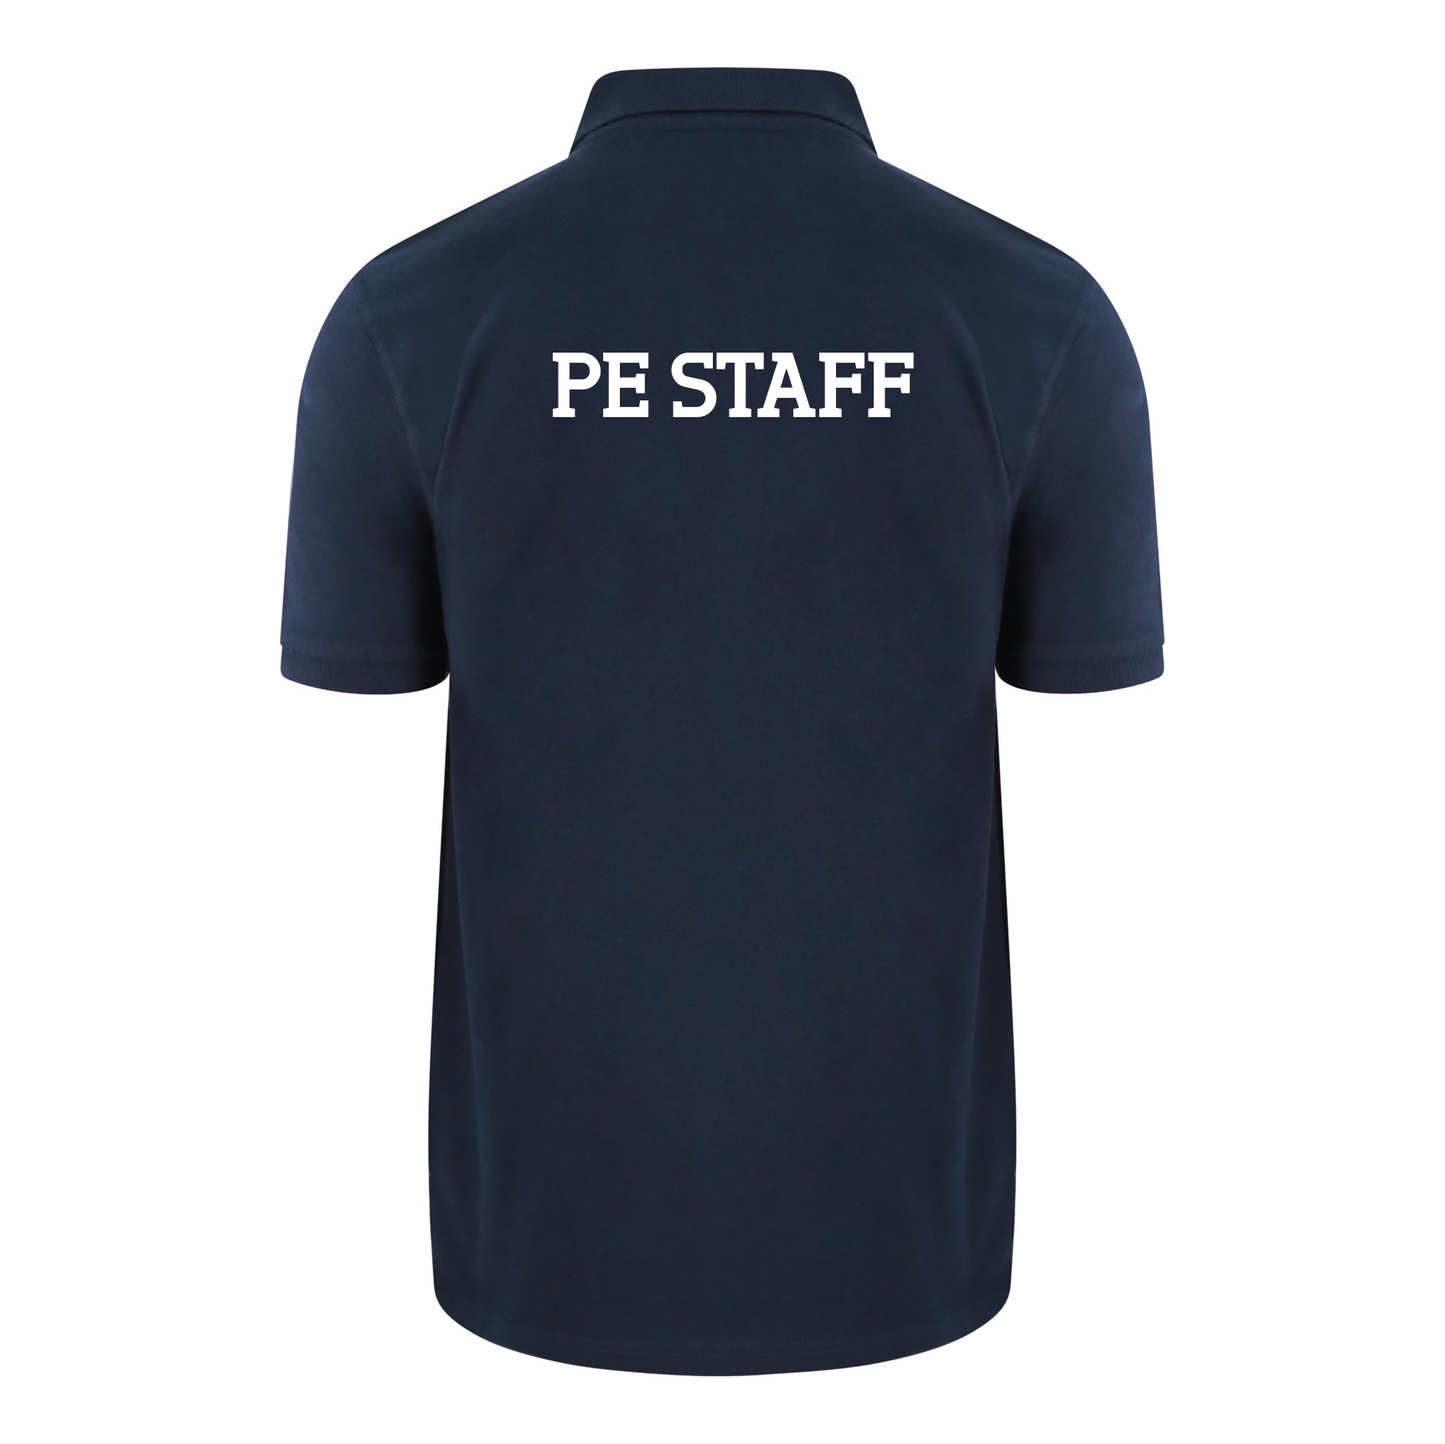 Moreton Hall Staff Polo Shirt